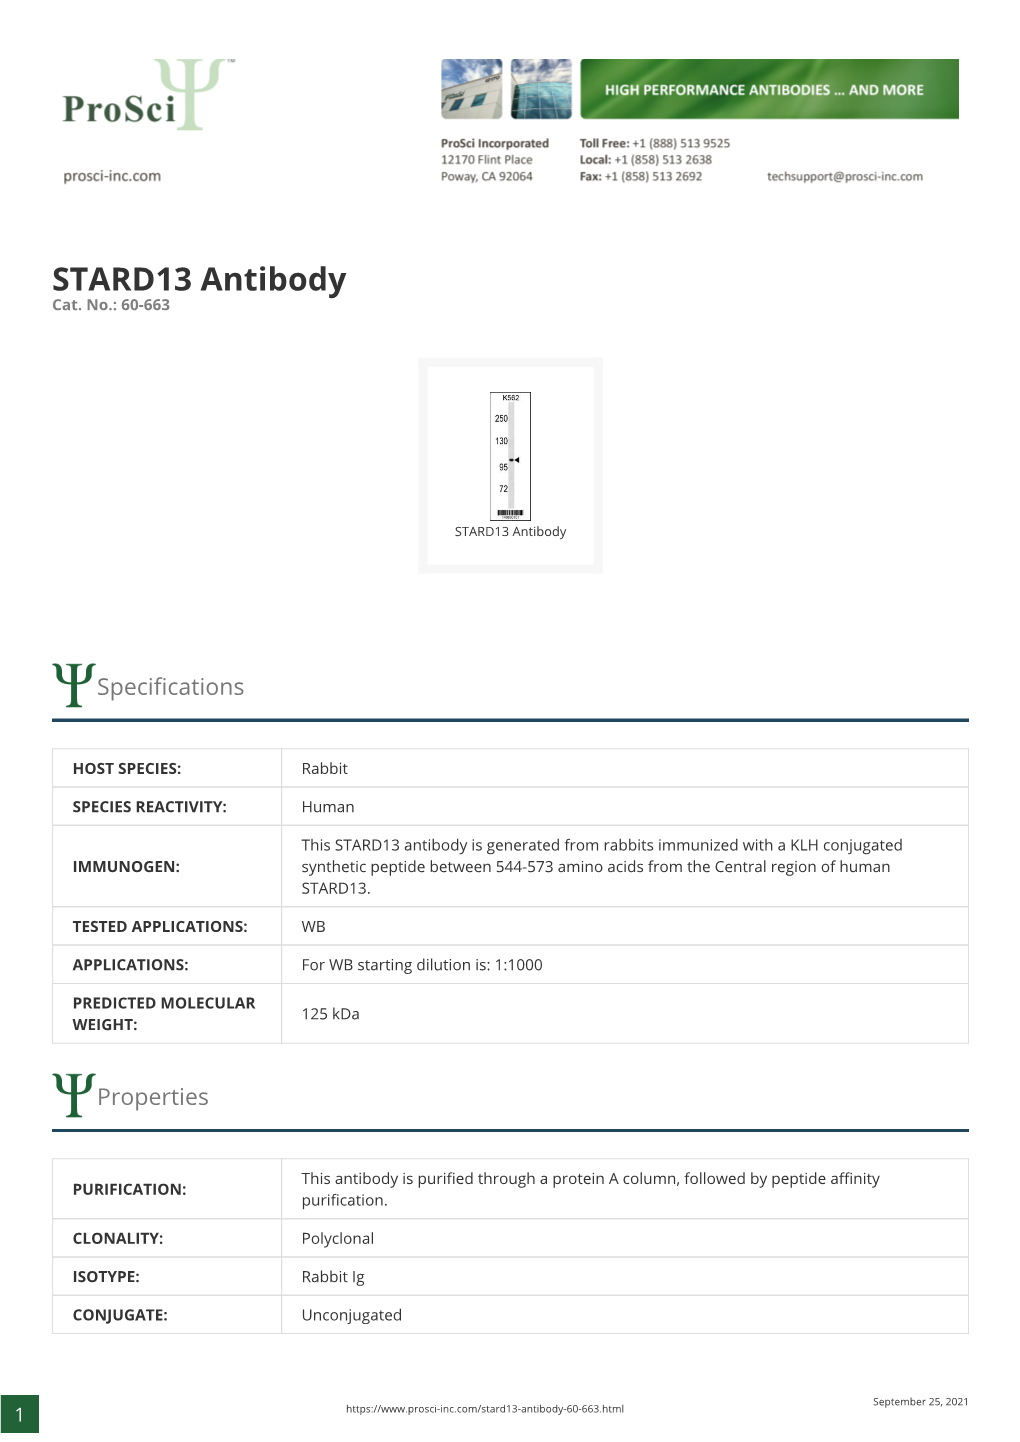 STARD13 Antibody Cat